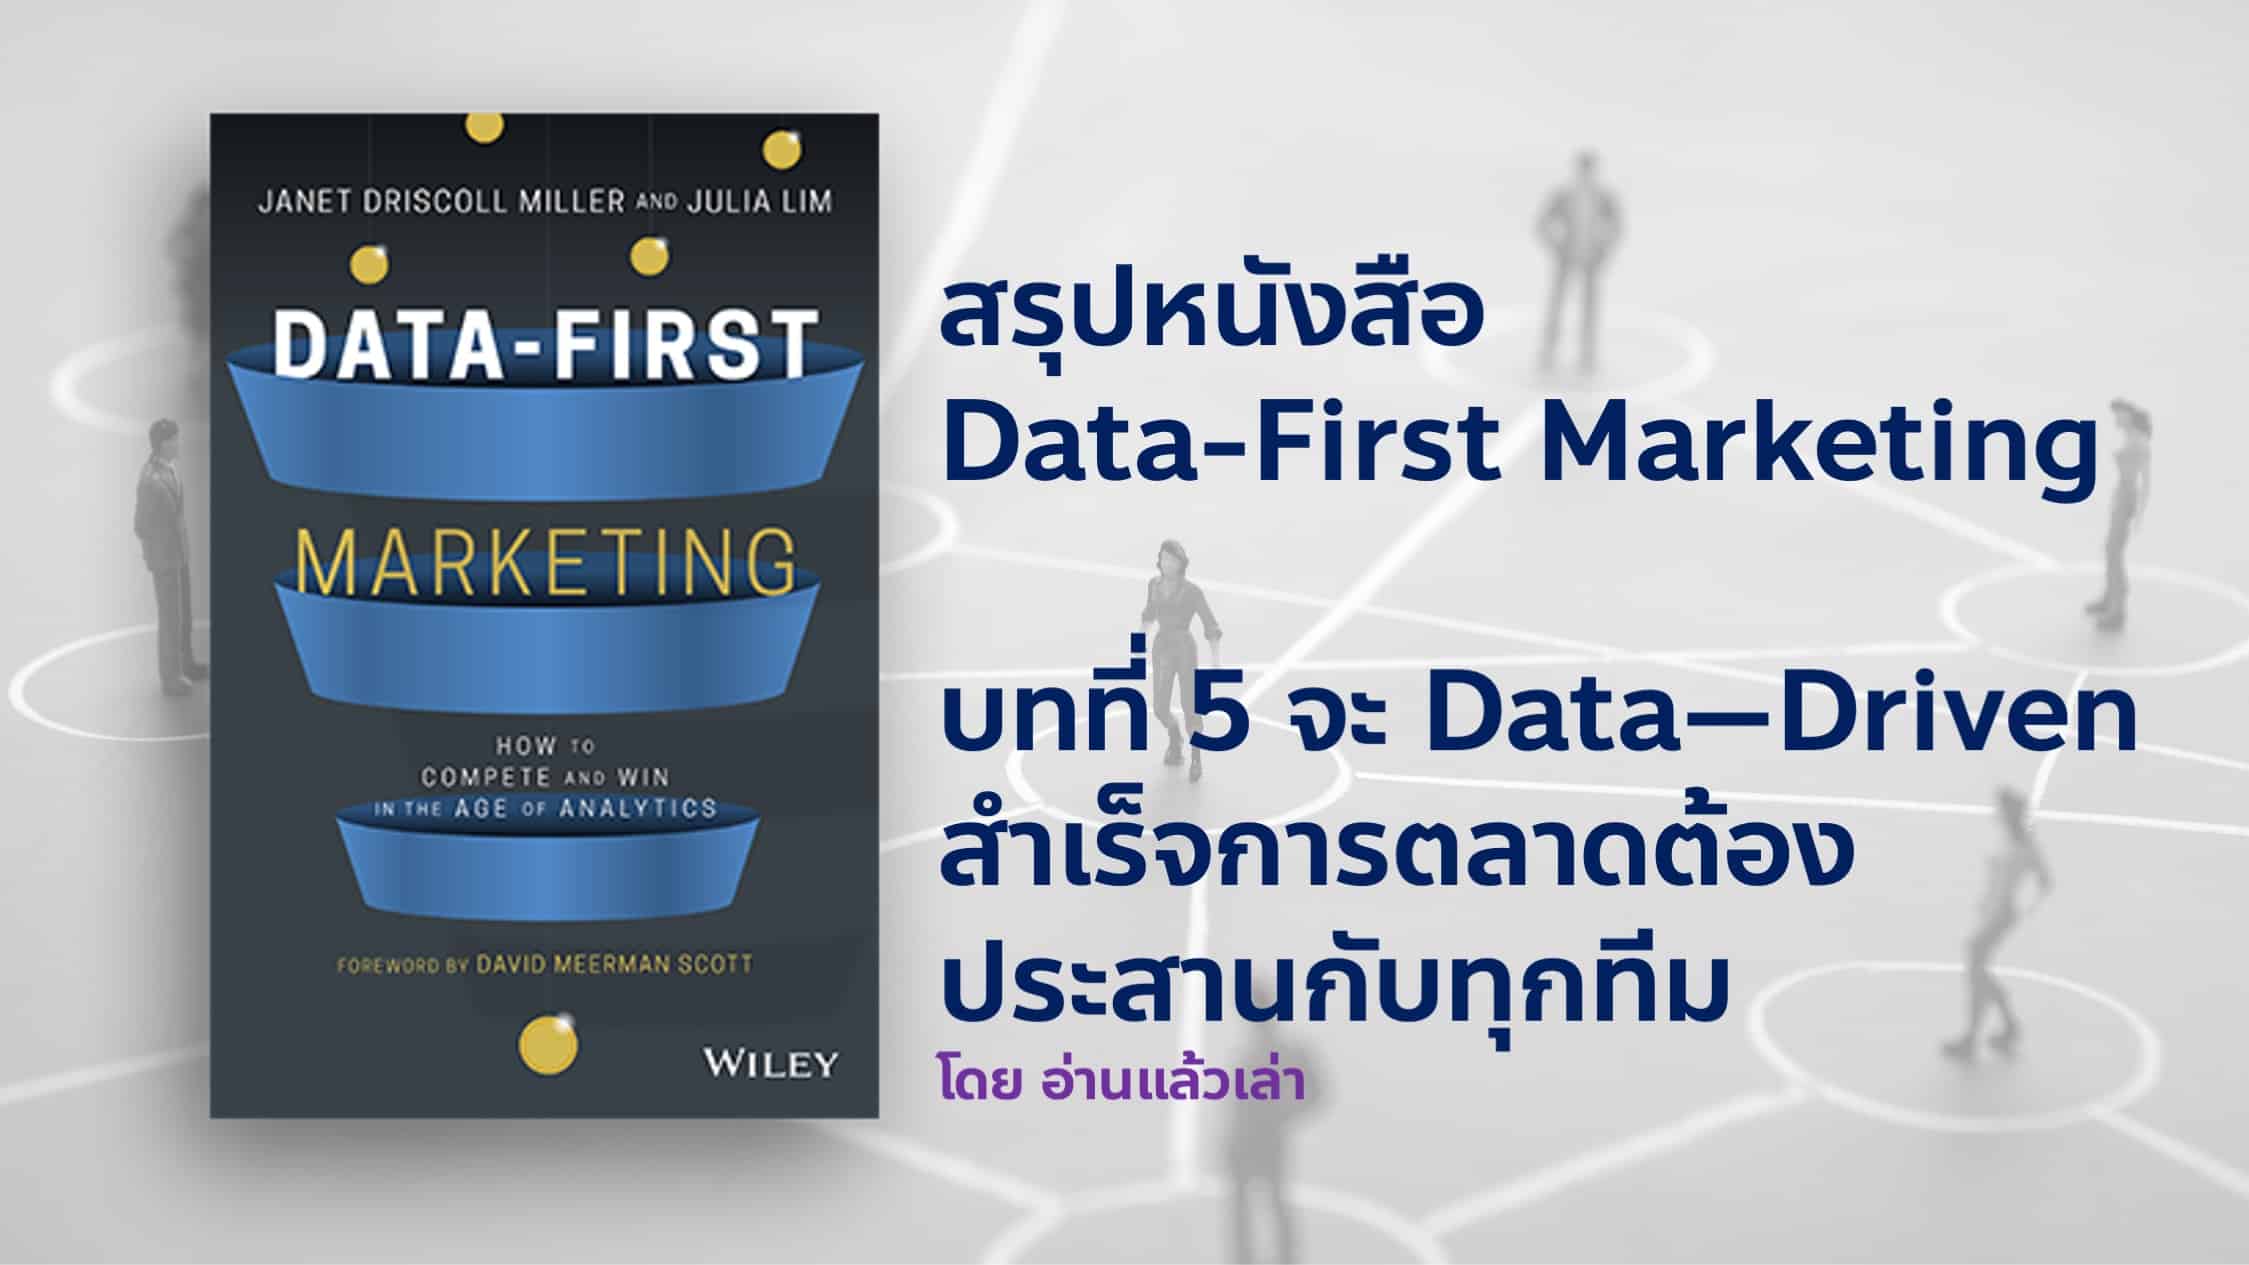 Data-First Marketing บทที่ 5 การตลาดกับธุรกิจต้องประสานกัน